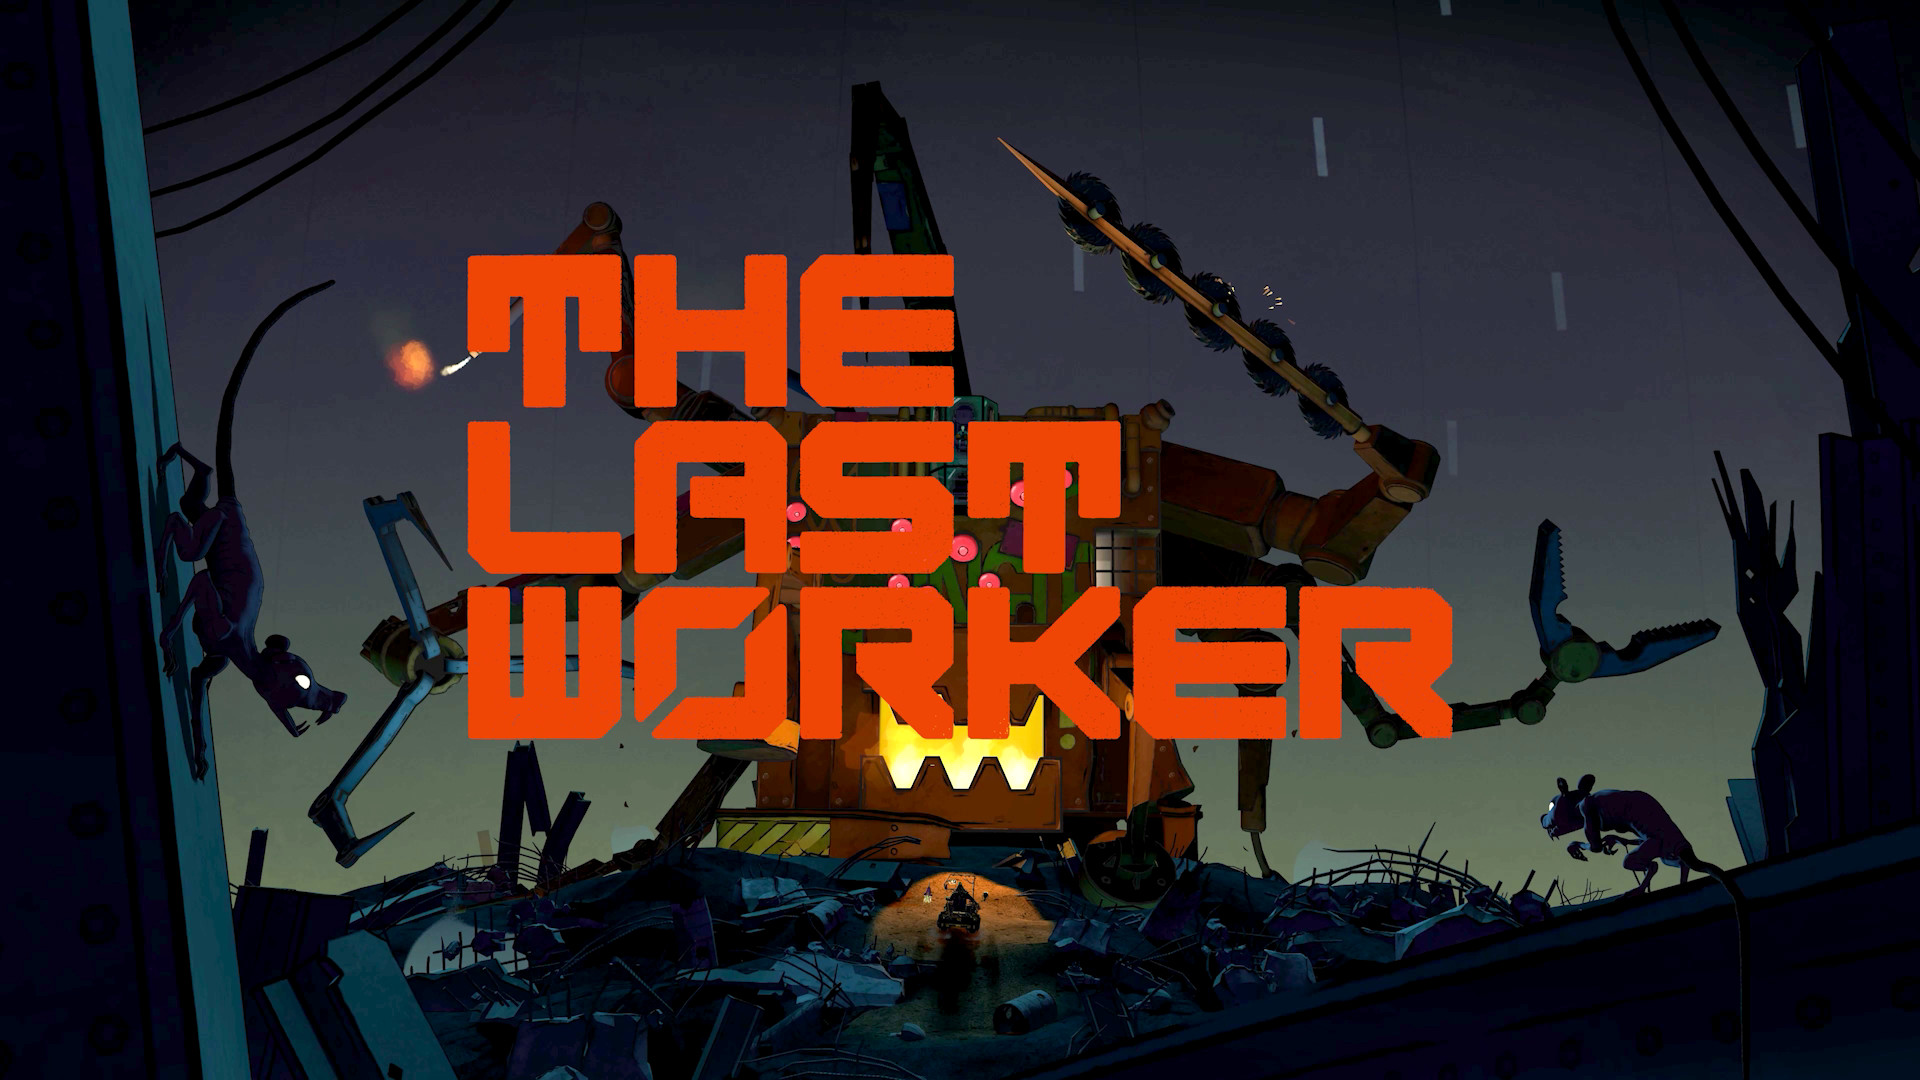 เปิดตัวเกม The Last Worker พร้อมเตรียมลงให้กับเครื่องคอนโซลและ PC ในปี 2022